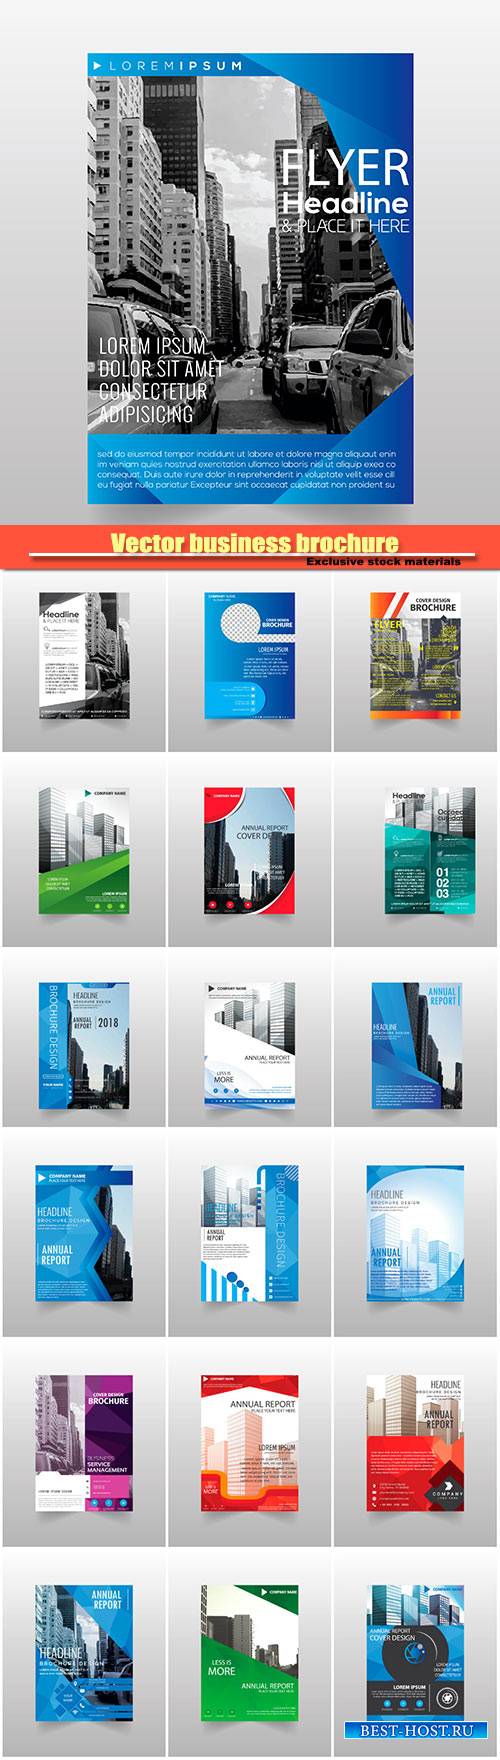 Vector business brochure flyers